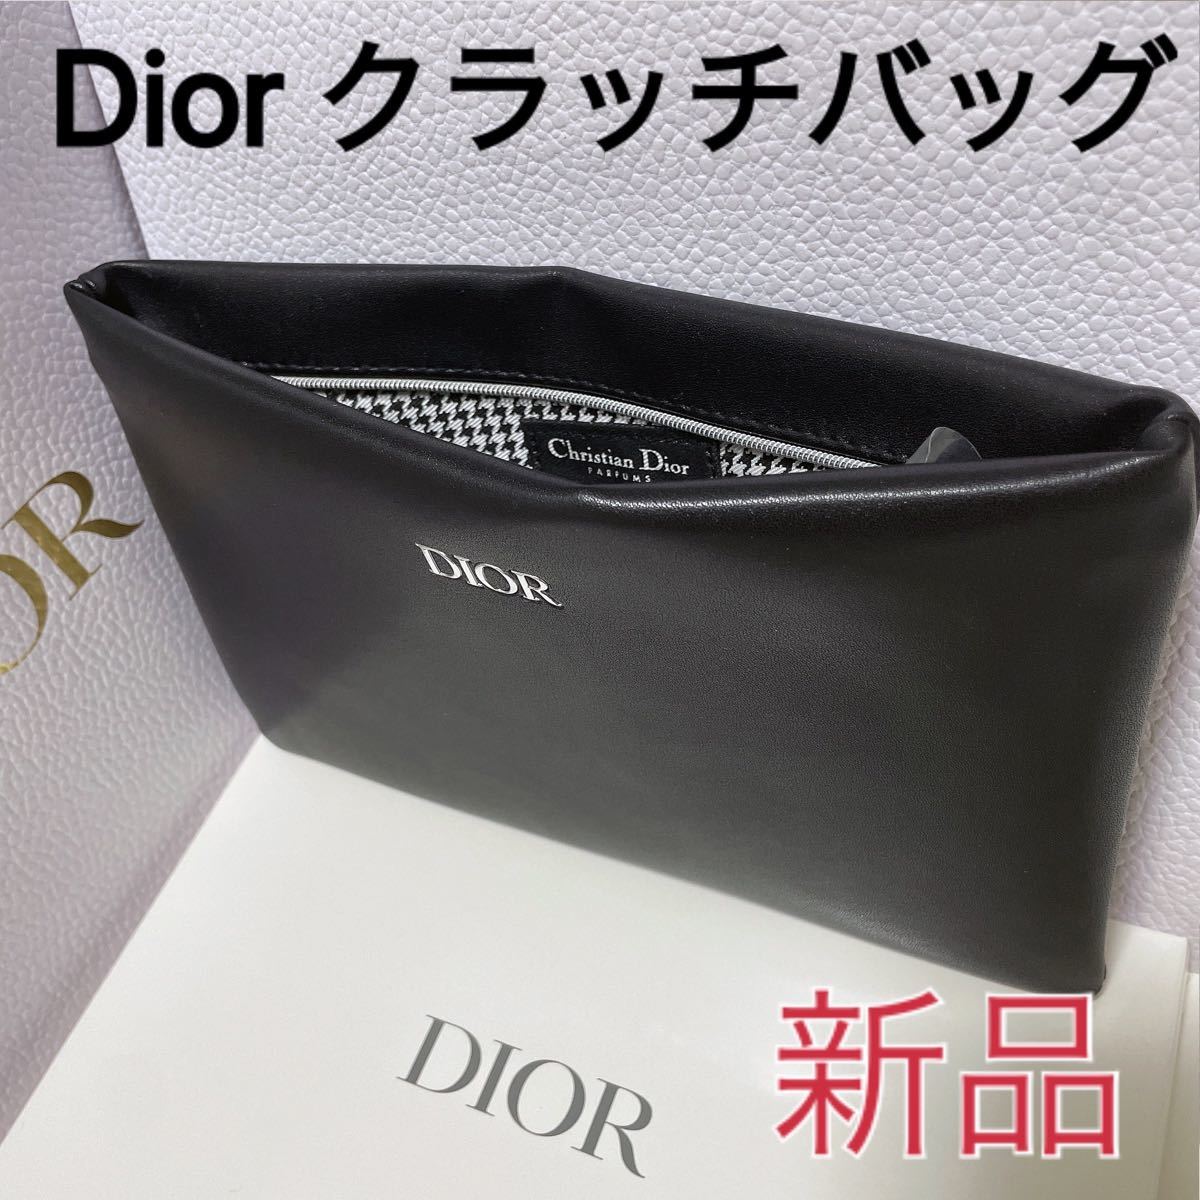 新色 美品 Dior ポーチ クラッチバック superior-quality.ru:443